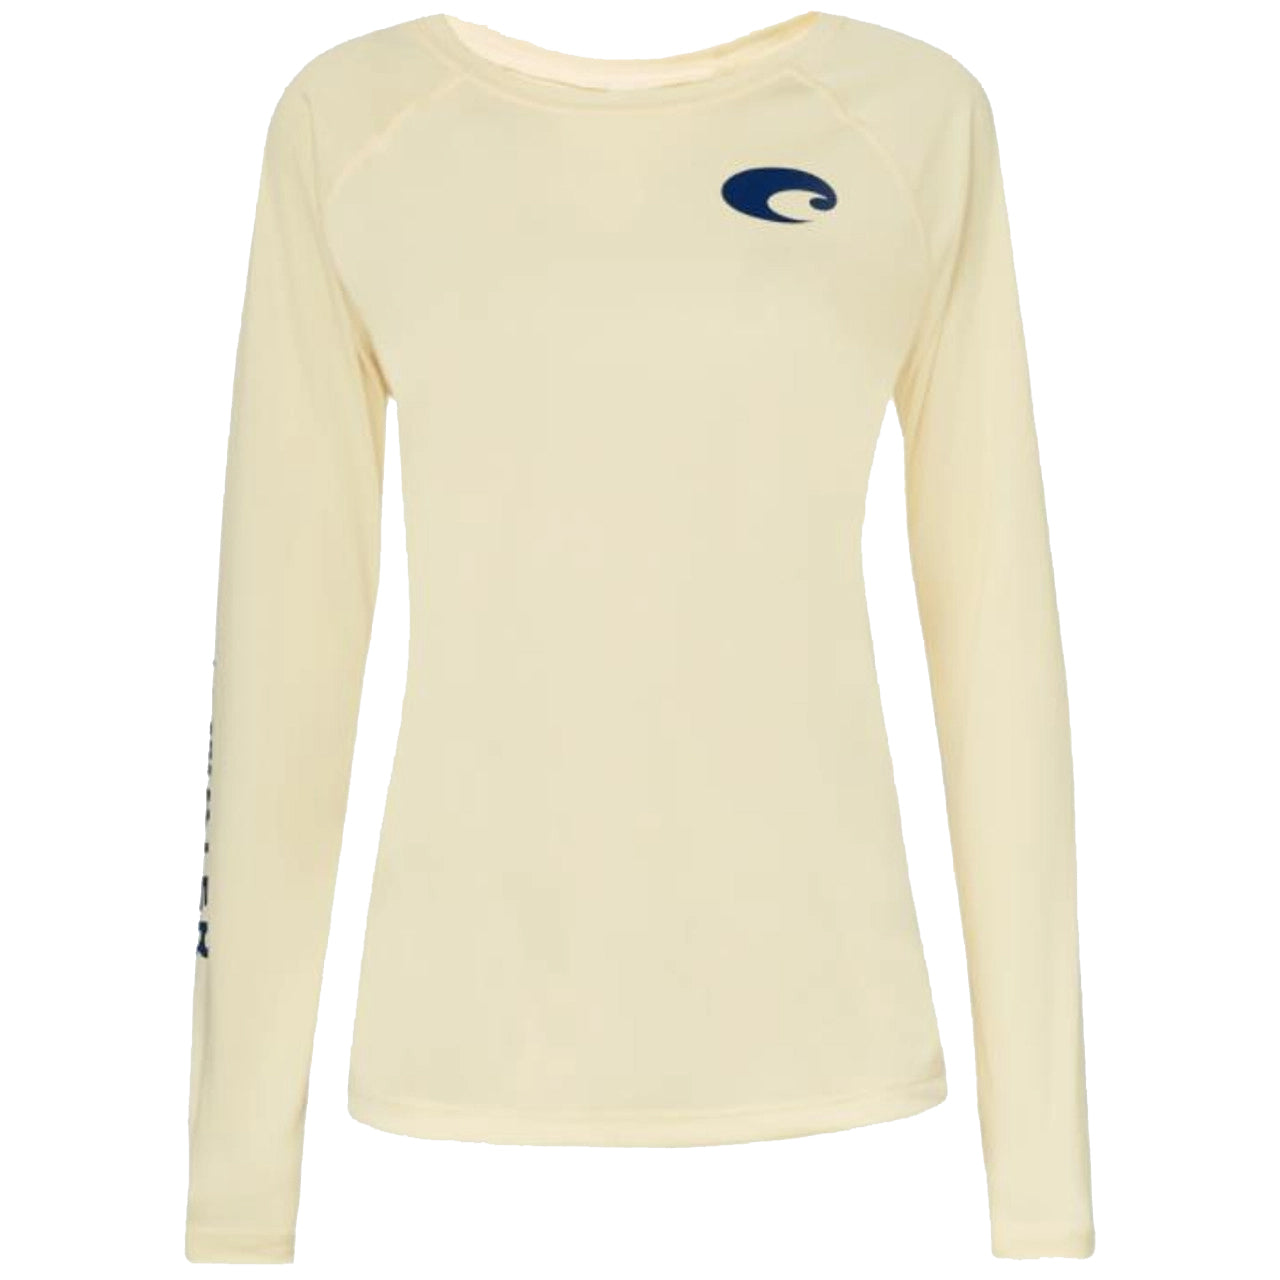 Costa Array Women's Tech T-Shirt - Pearl Grey - M